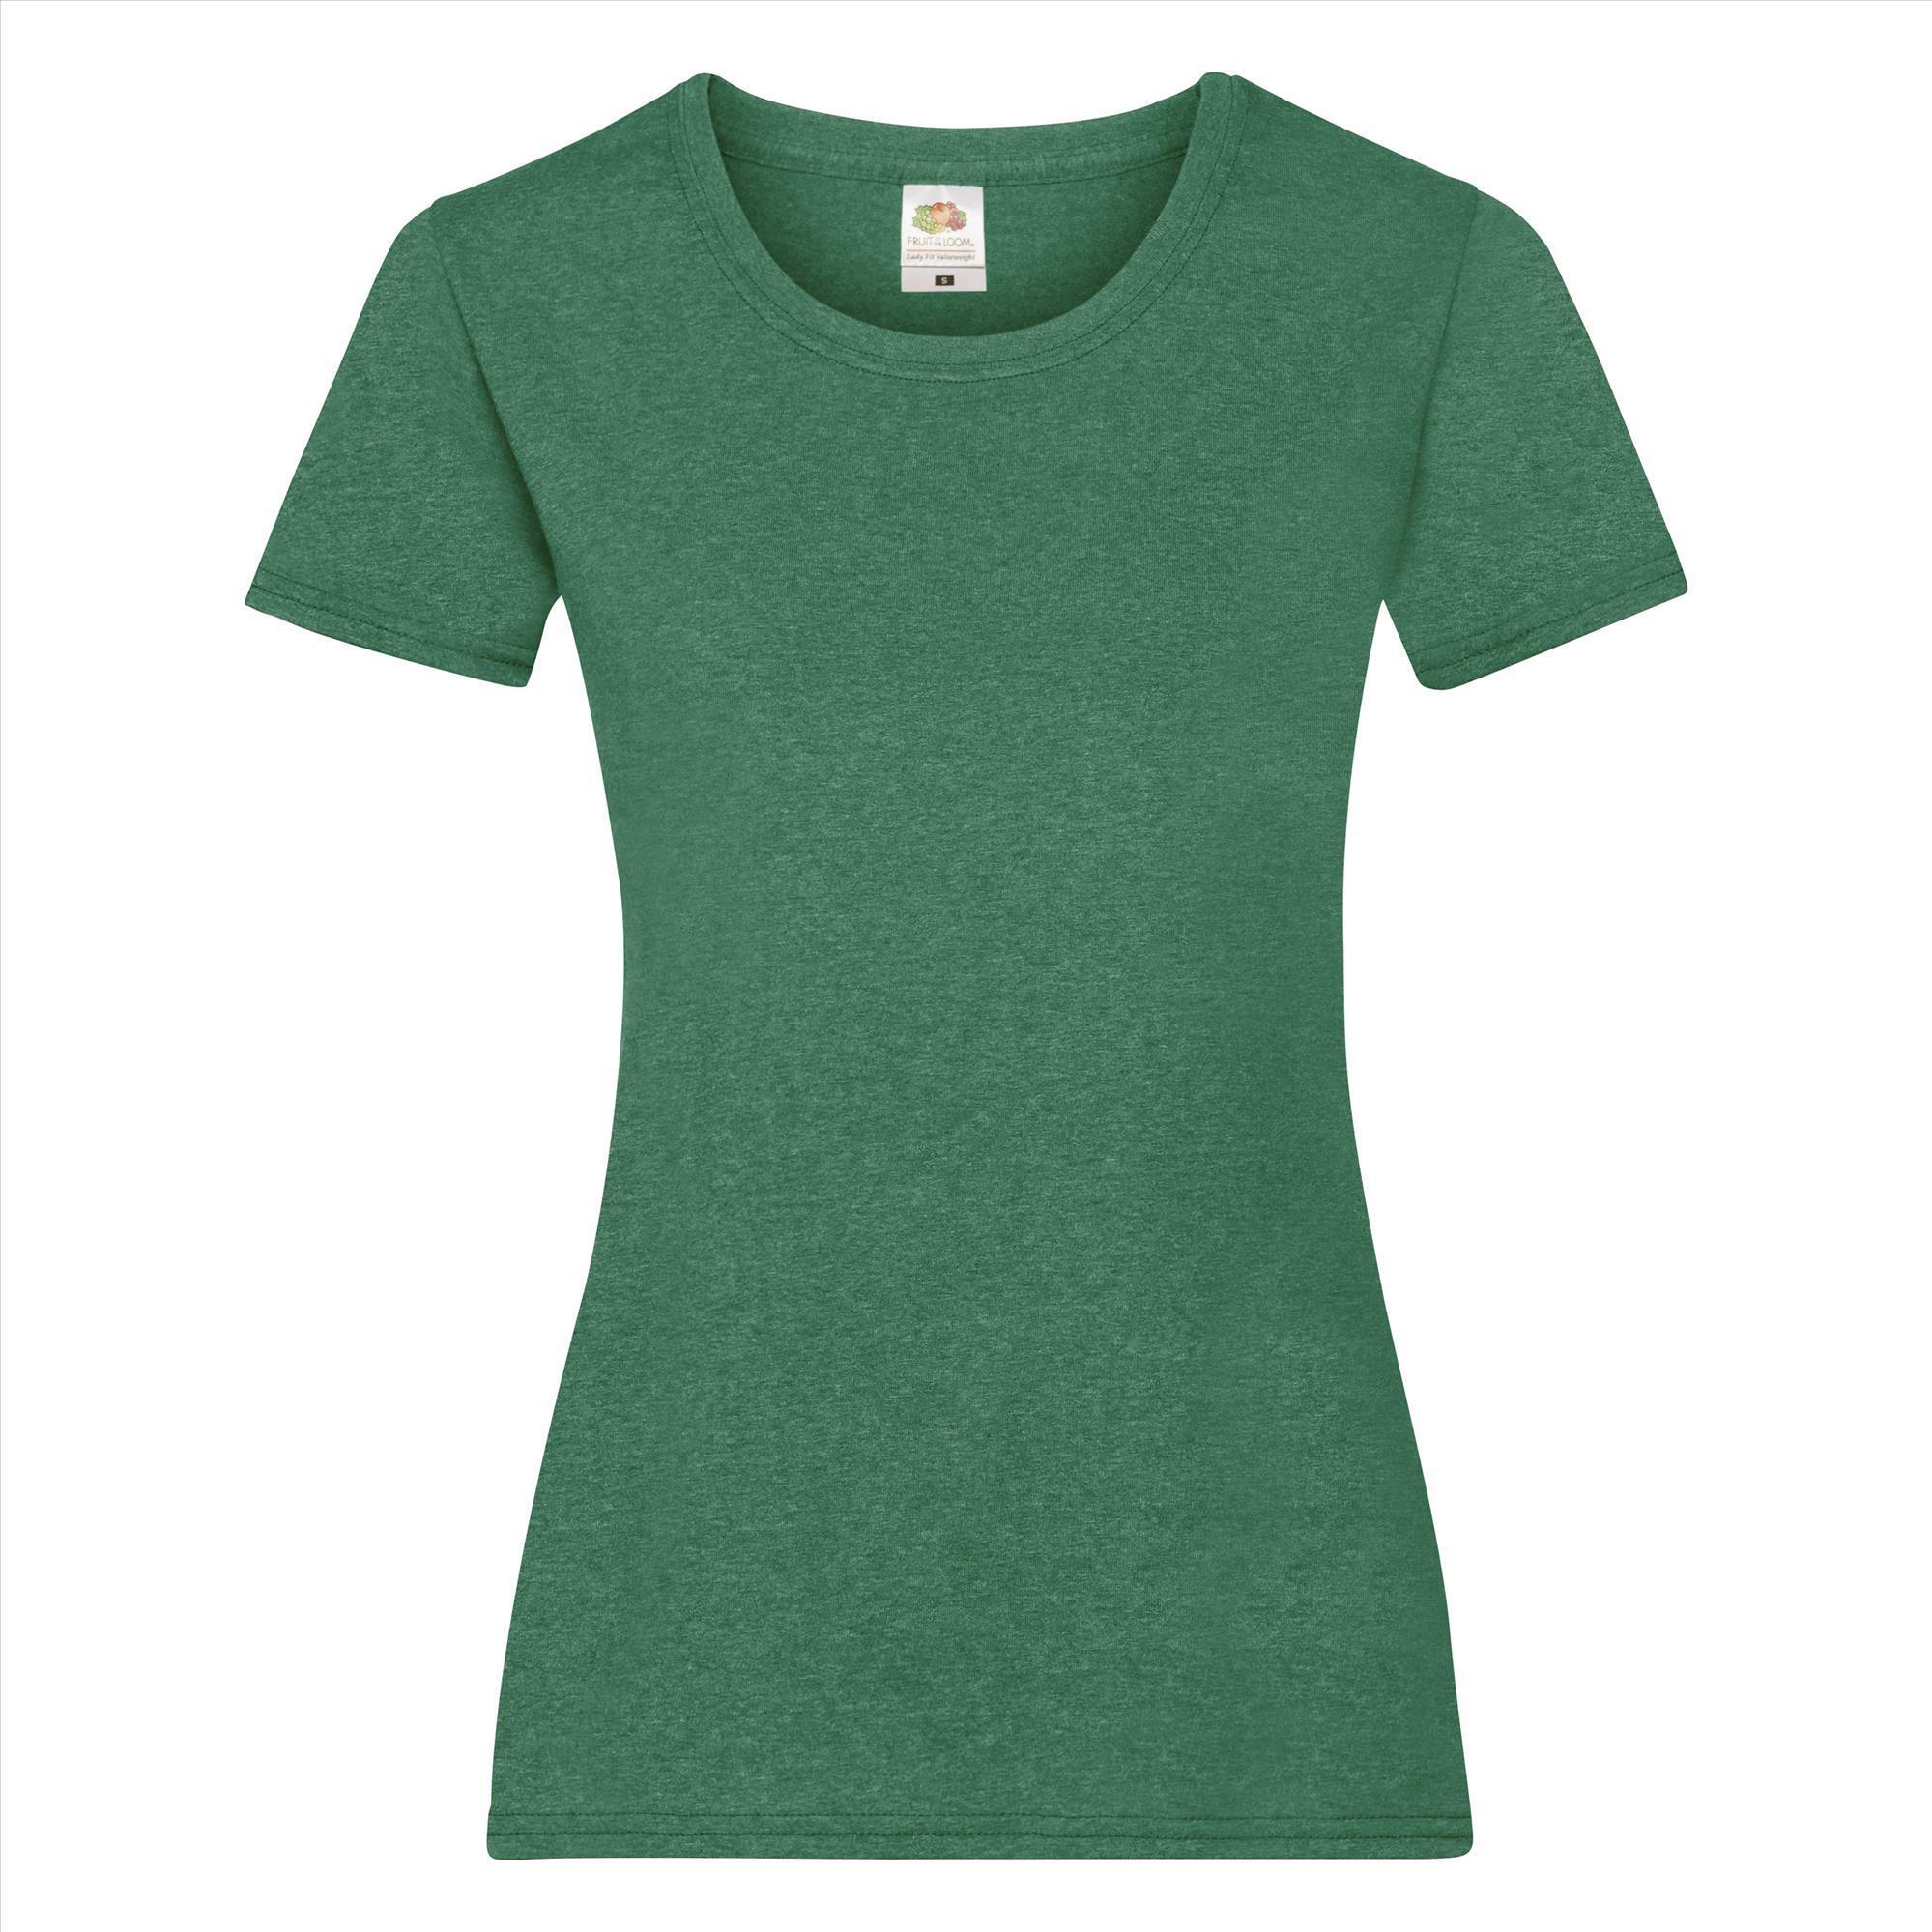 Dames T-shirt retro heather green te personaliseren te bedrukken